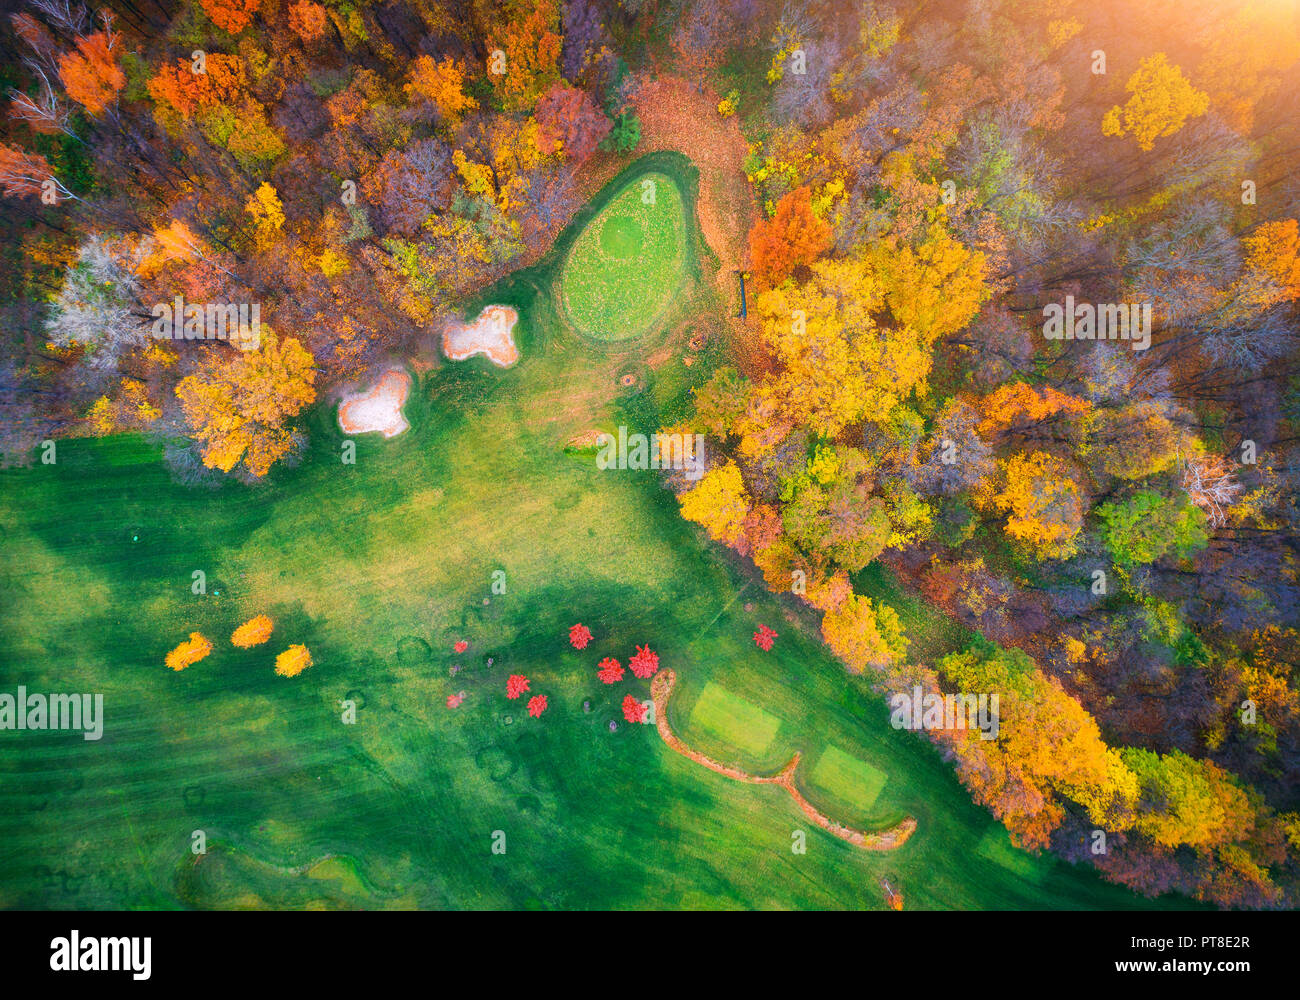 Vista aerea del fantastico parco di autunno in europa in serata. Paesaggio con alberi con foglie colorate, campo con erba verde e percorsi per l'autunno. Scen Foto Stock